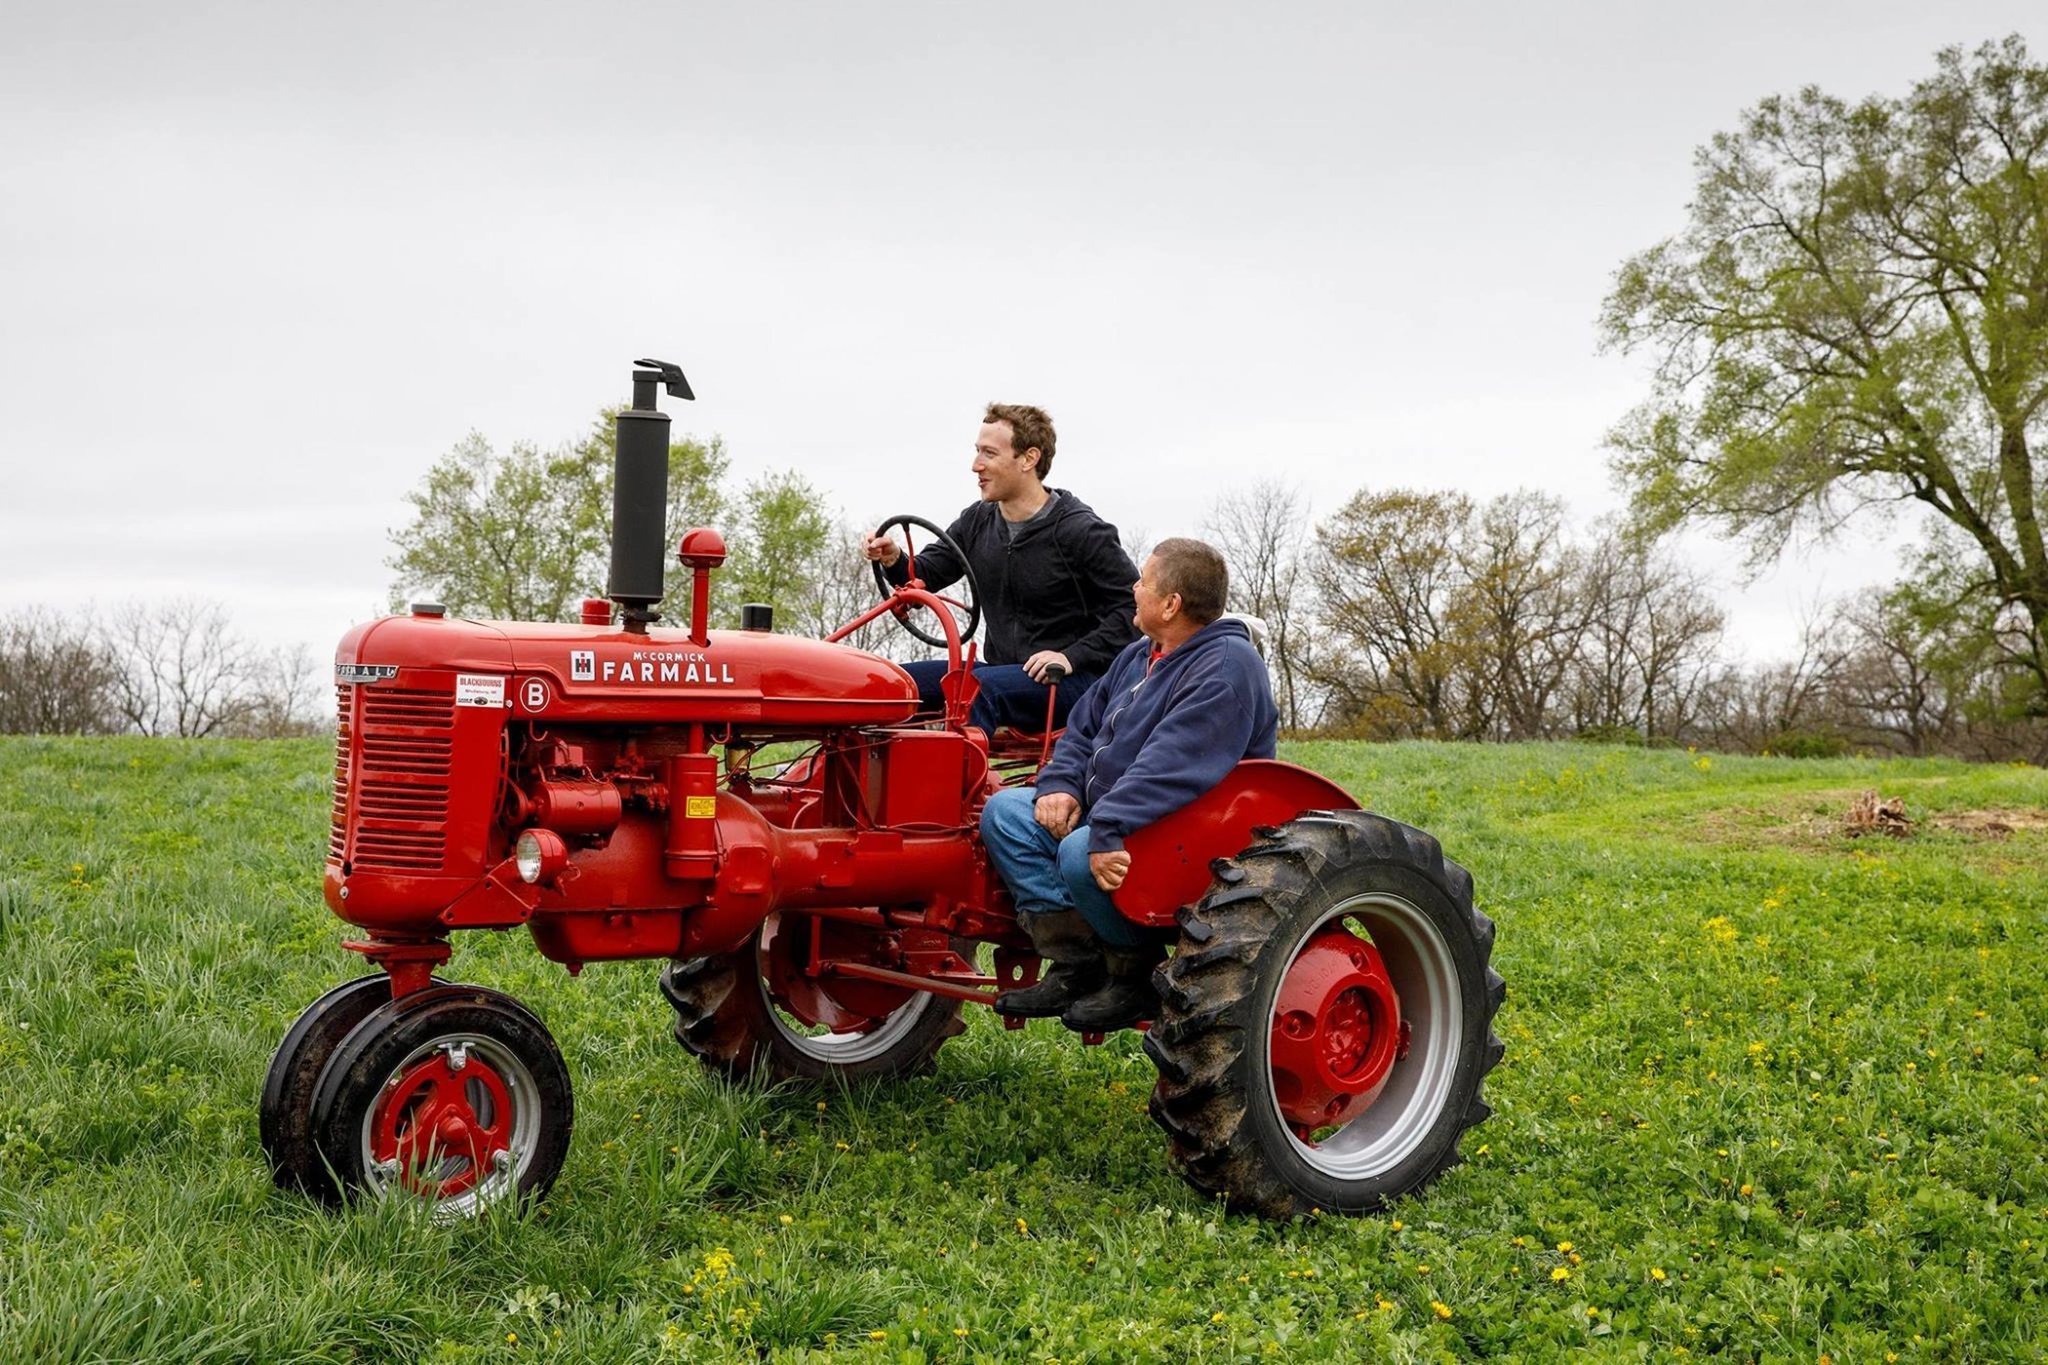 扎克伯格在甘特家族农场开拖拉机以下为文章主要内容:今年3月份,马克